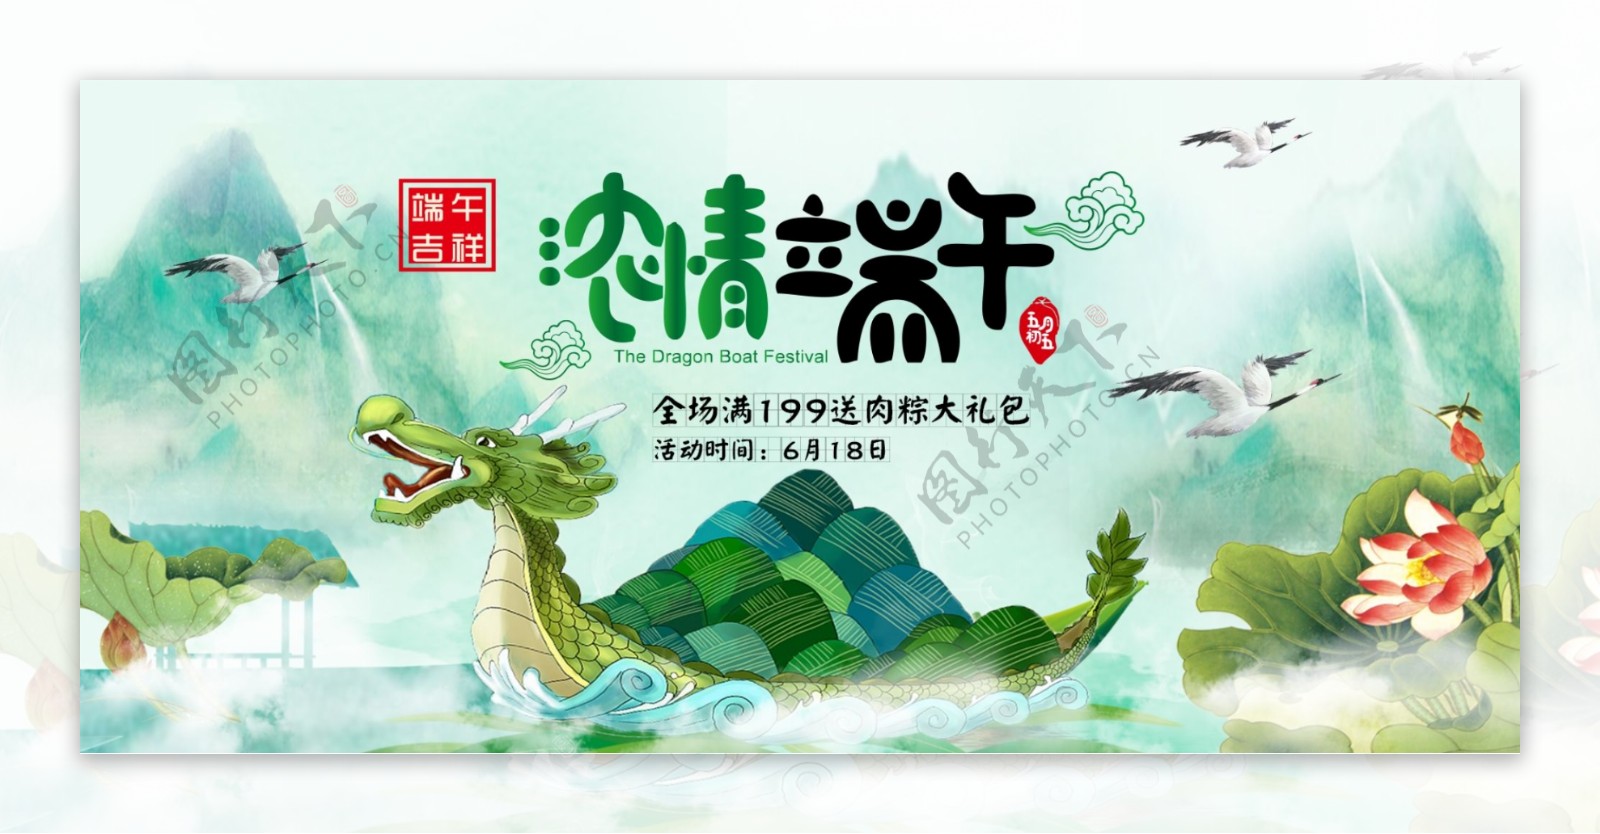 电商淘宝端午节促销浅绿中国风龙舟首页海报